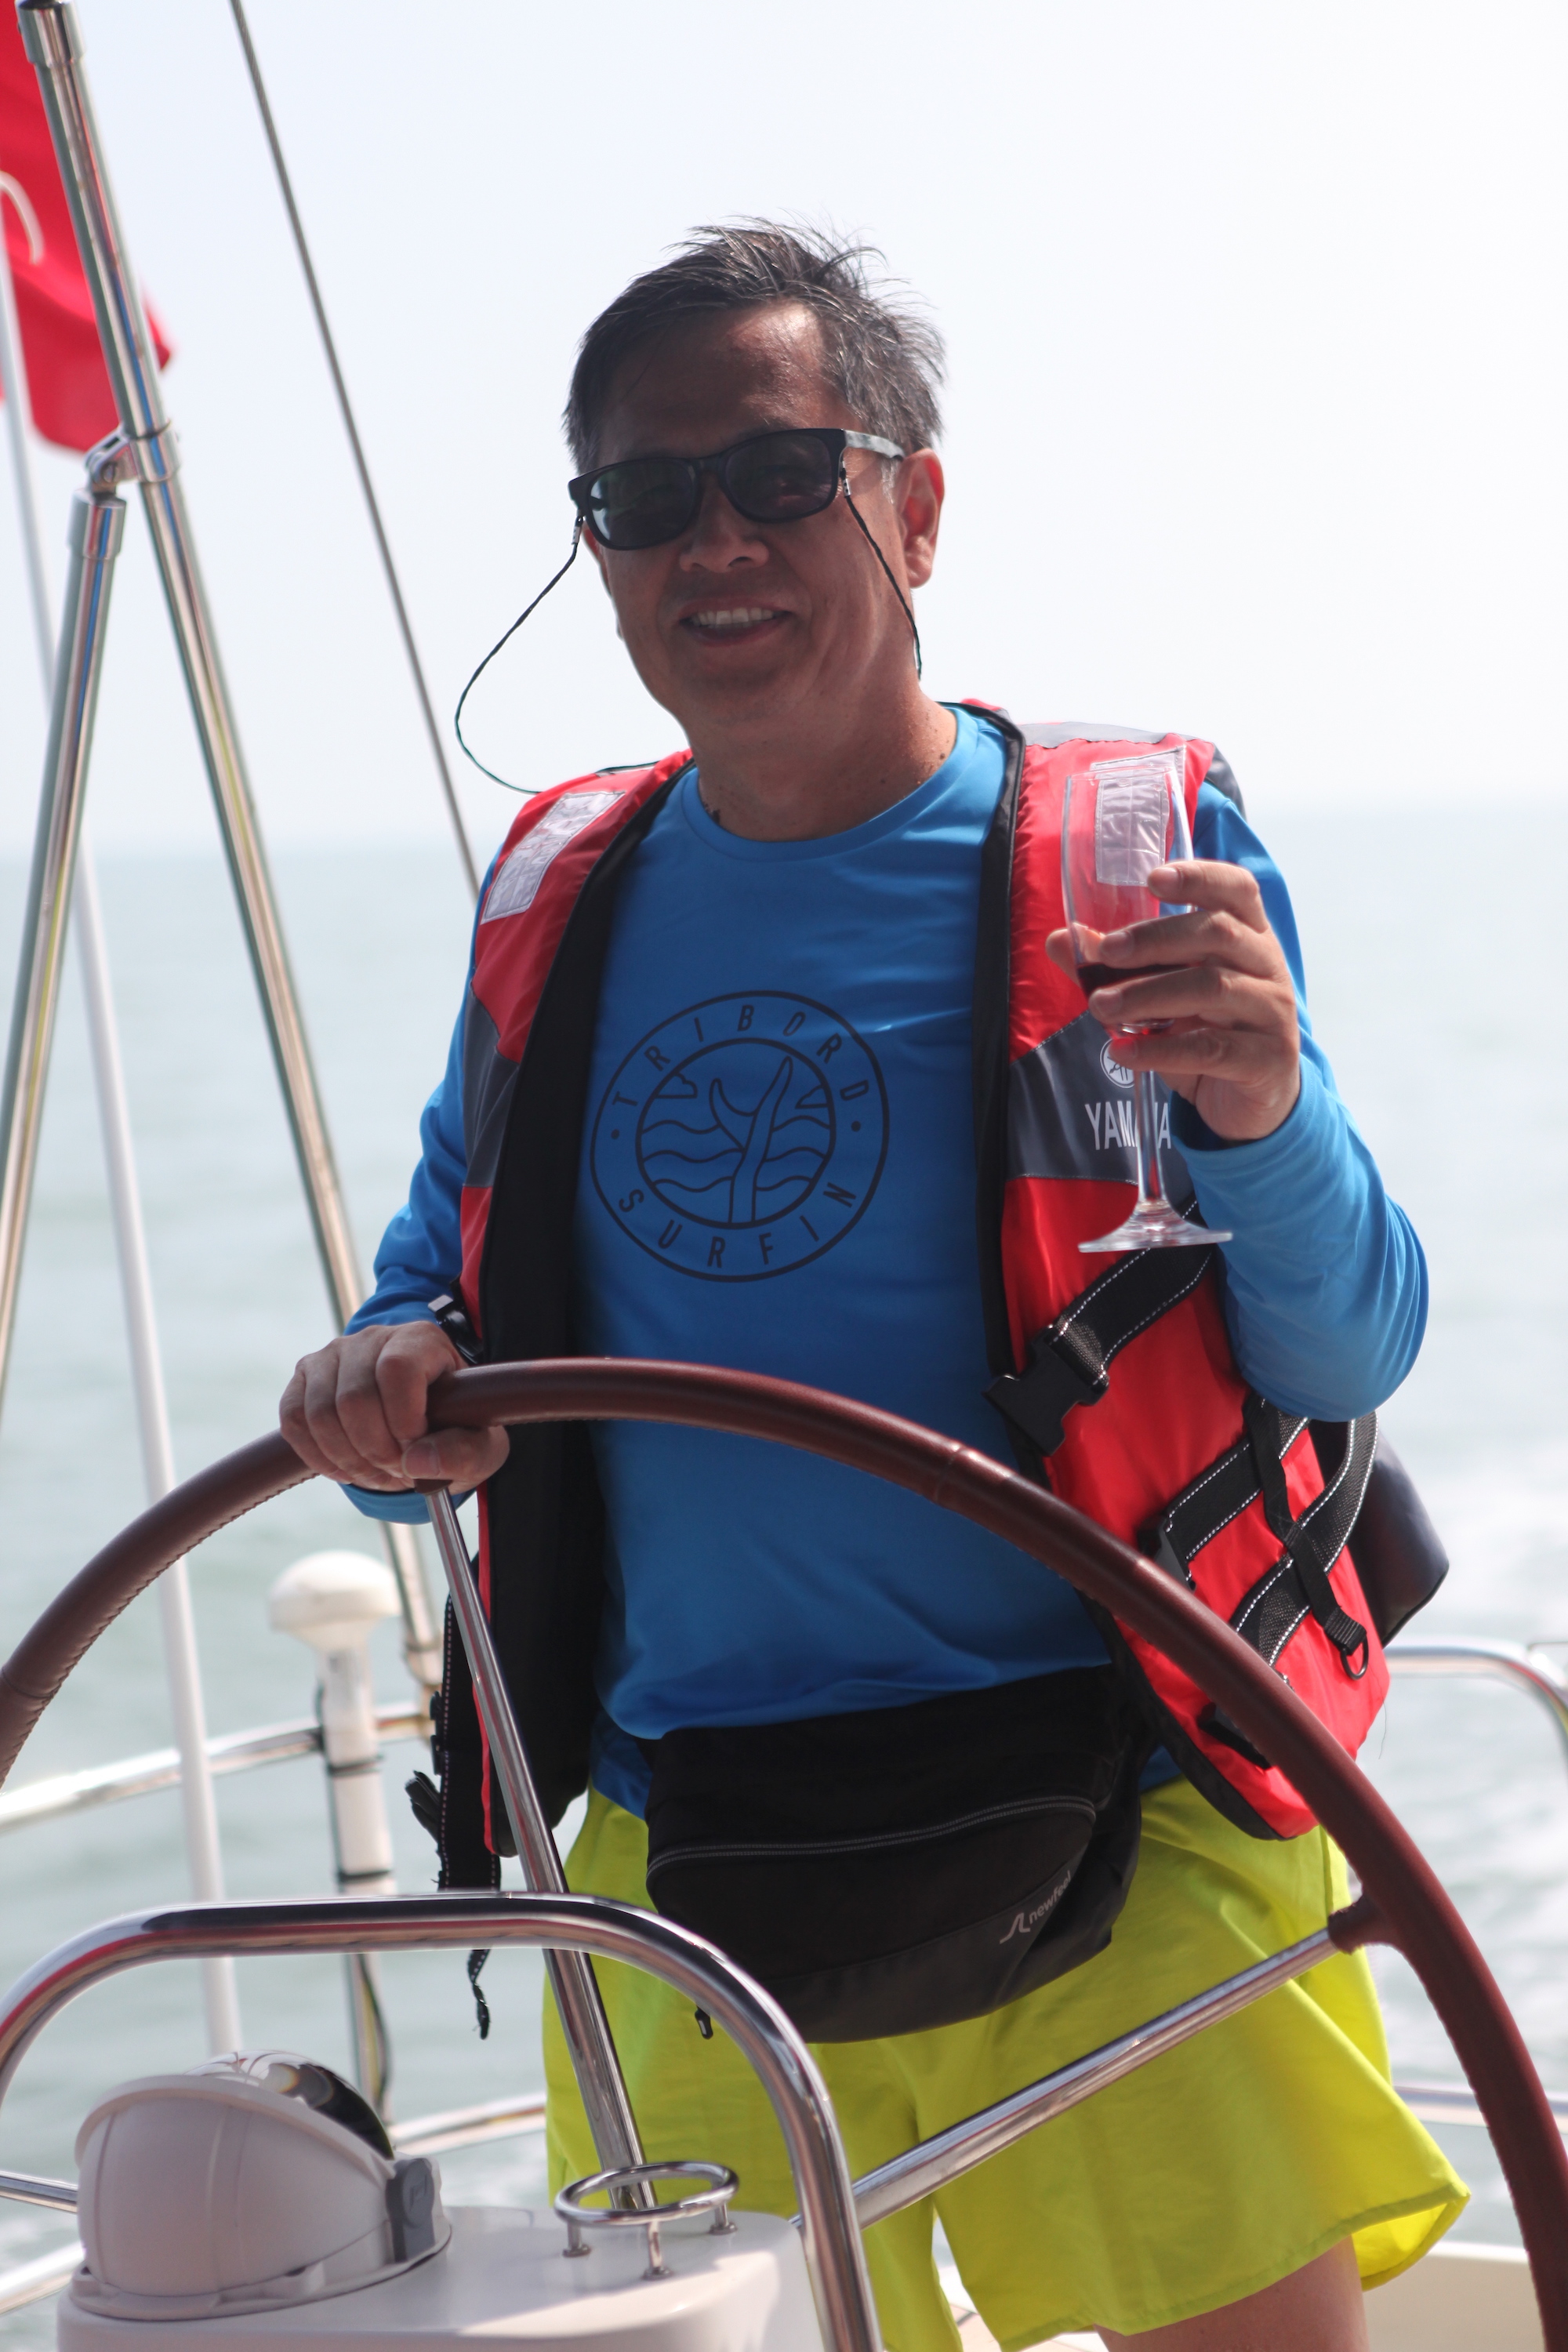 我要航海网千航帆船队2016环渤海杯帆船拉力赛IMG_6423.JPG